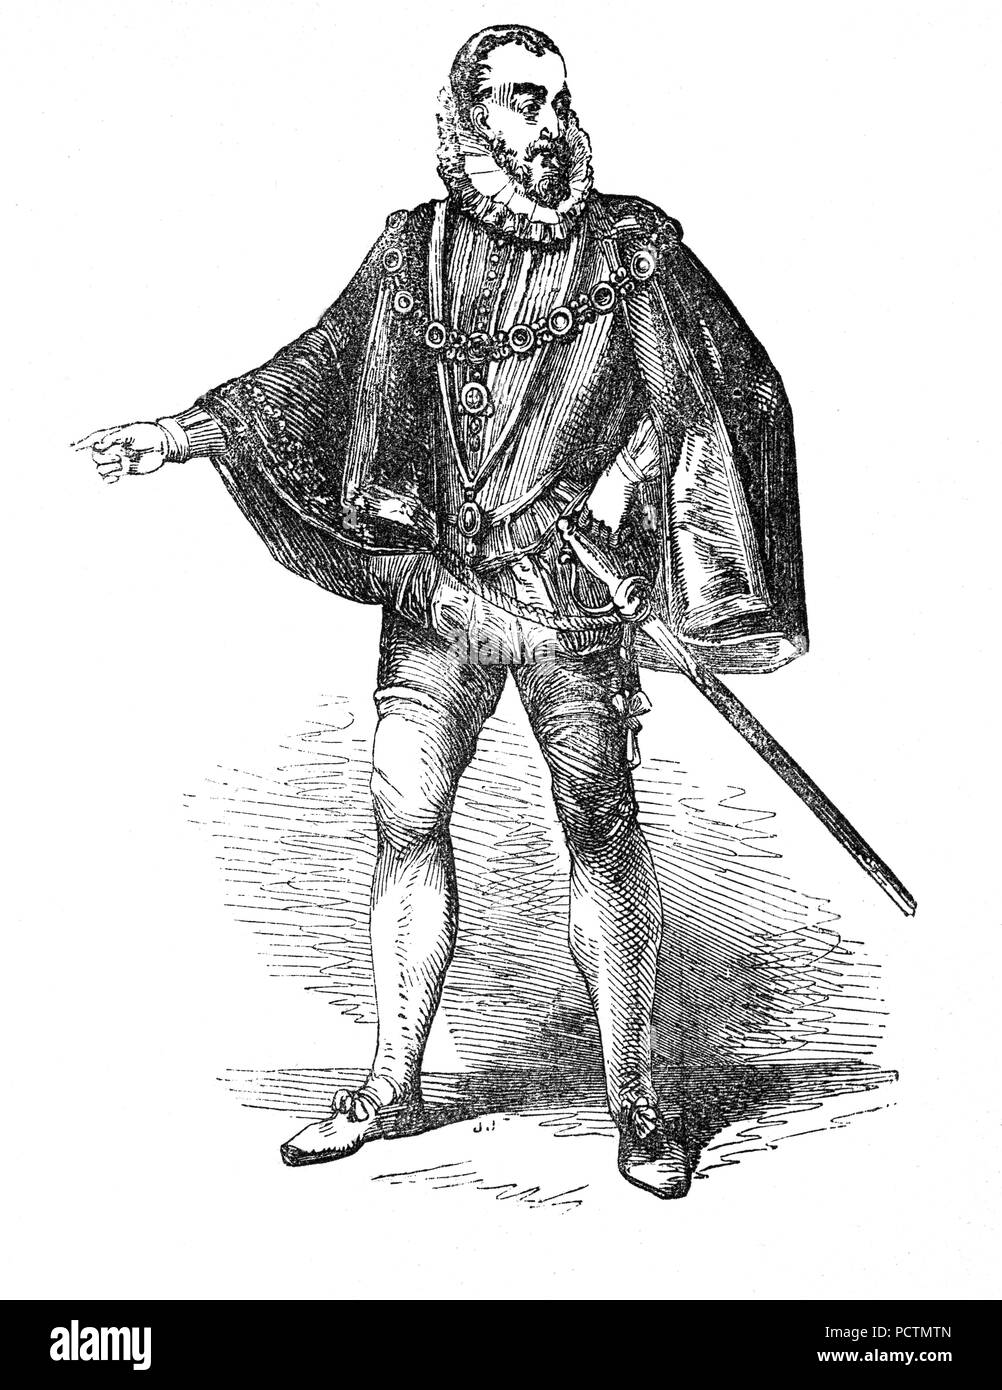 Portrait de Charles Howard, 1 Comte de Nottingham, (1536-1624), connu sous le nom de Howard Effingham, était un homme d'état anglais et grand amiral sous Elizabeth I et James I. Il est commandant des forces anglaises lors des batailles contre l'Armada espagnole et a été principalement responsable après Francis Drake pour la victoire qui a sauvé l'Angleterre de l'invasion par l'Empire espagnol. Banque D'Images